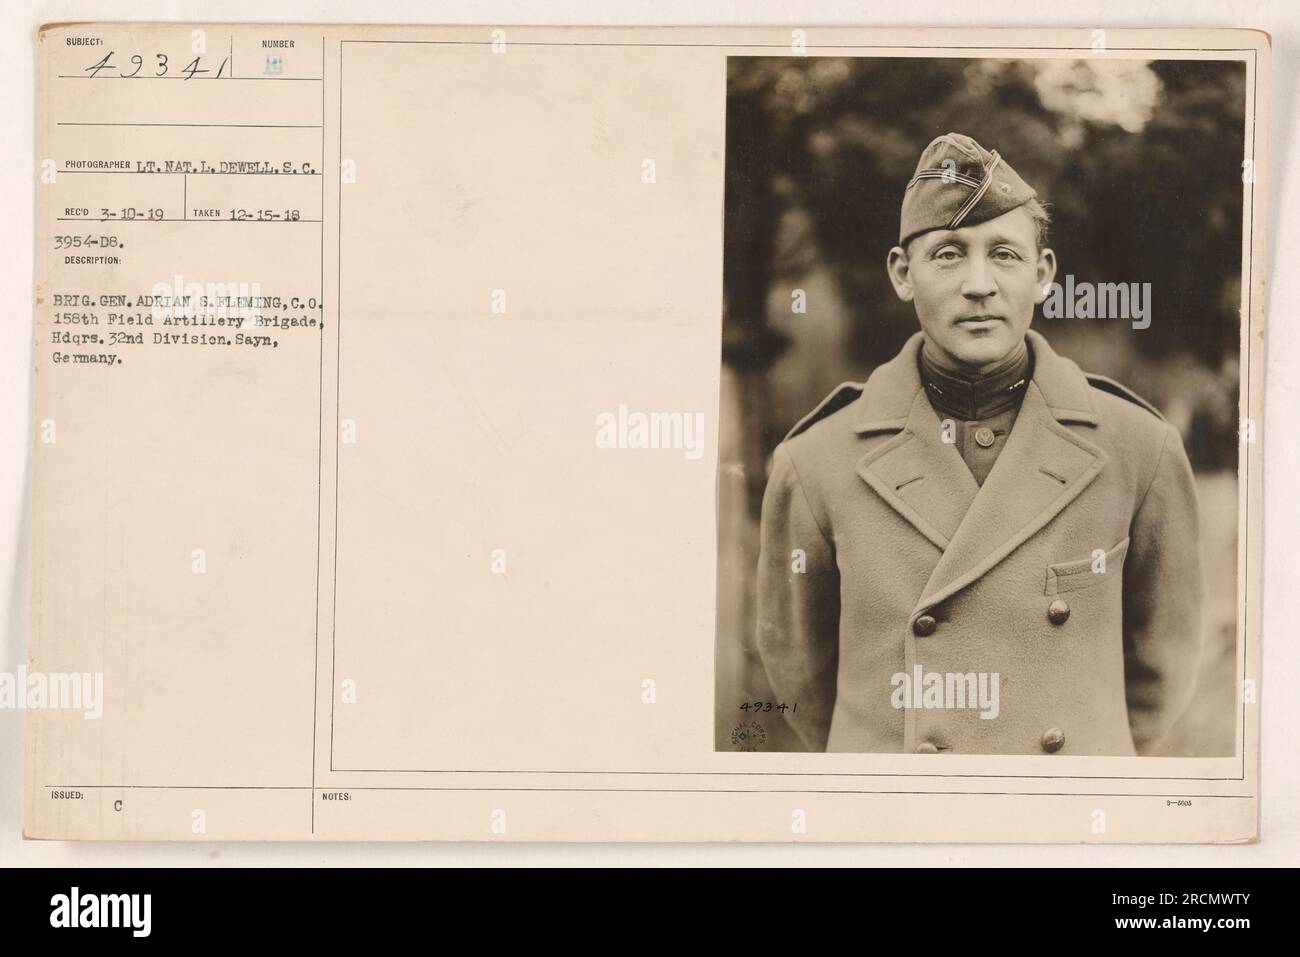 Brigg. General Adrian S. Fleming, der kommandierende Offizier der 158. Artilleriebrigade im Hauptquartier der 32. Division, ist auf diesem Foto in Sayn, Deutschland, zu sehen. Das Foto wurde von Lieutenant Nat gemacht. L. Dewell, S.C., am 15. Dezember 1918. Stockfoto